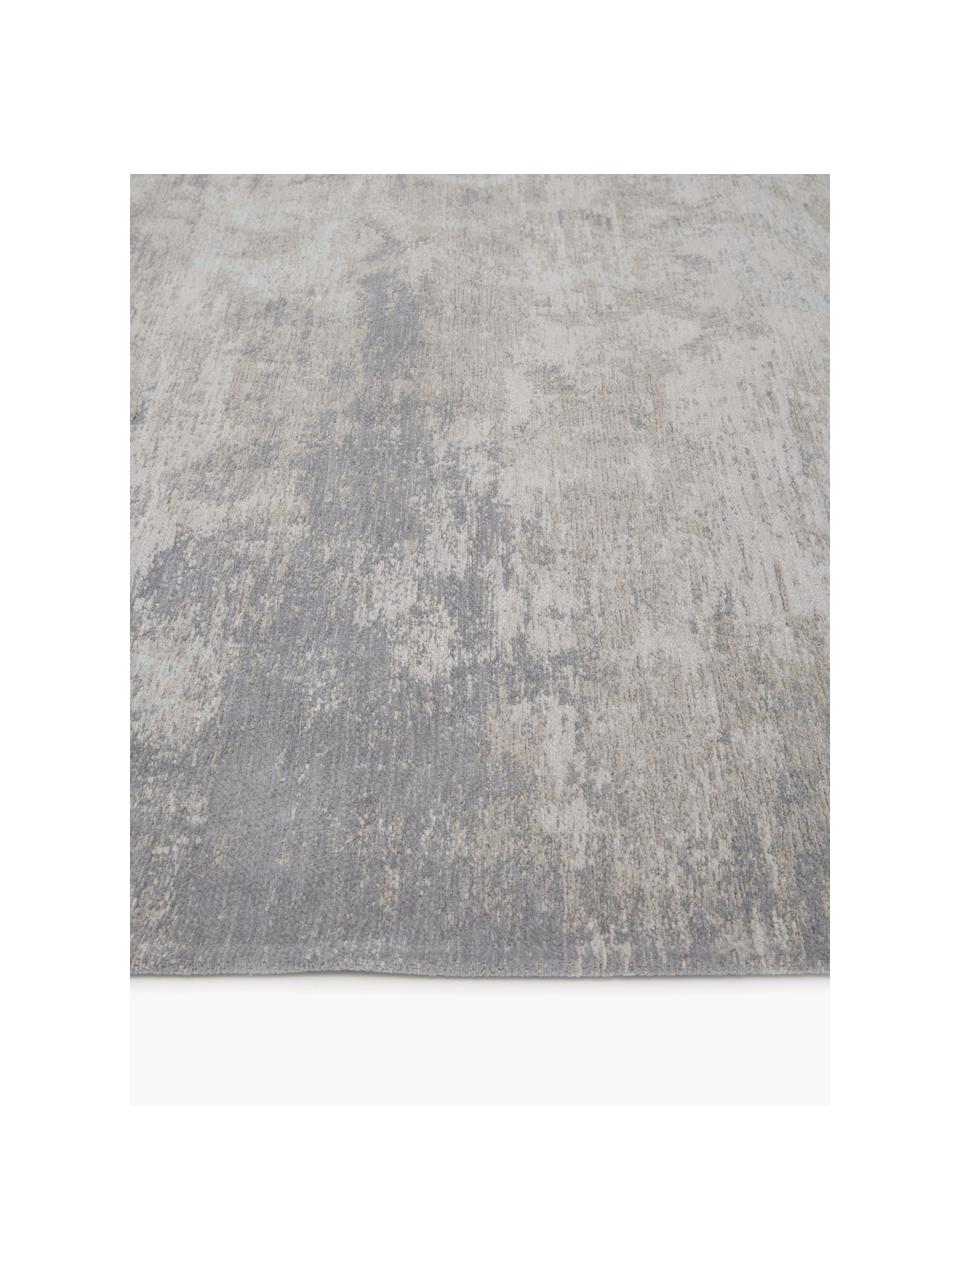 Alfombra de chenilla Babylon, Chenilla (100% algodón), Tonos grises, tonos beige, An 140 x L 200 cm(Tamaño S)